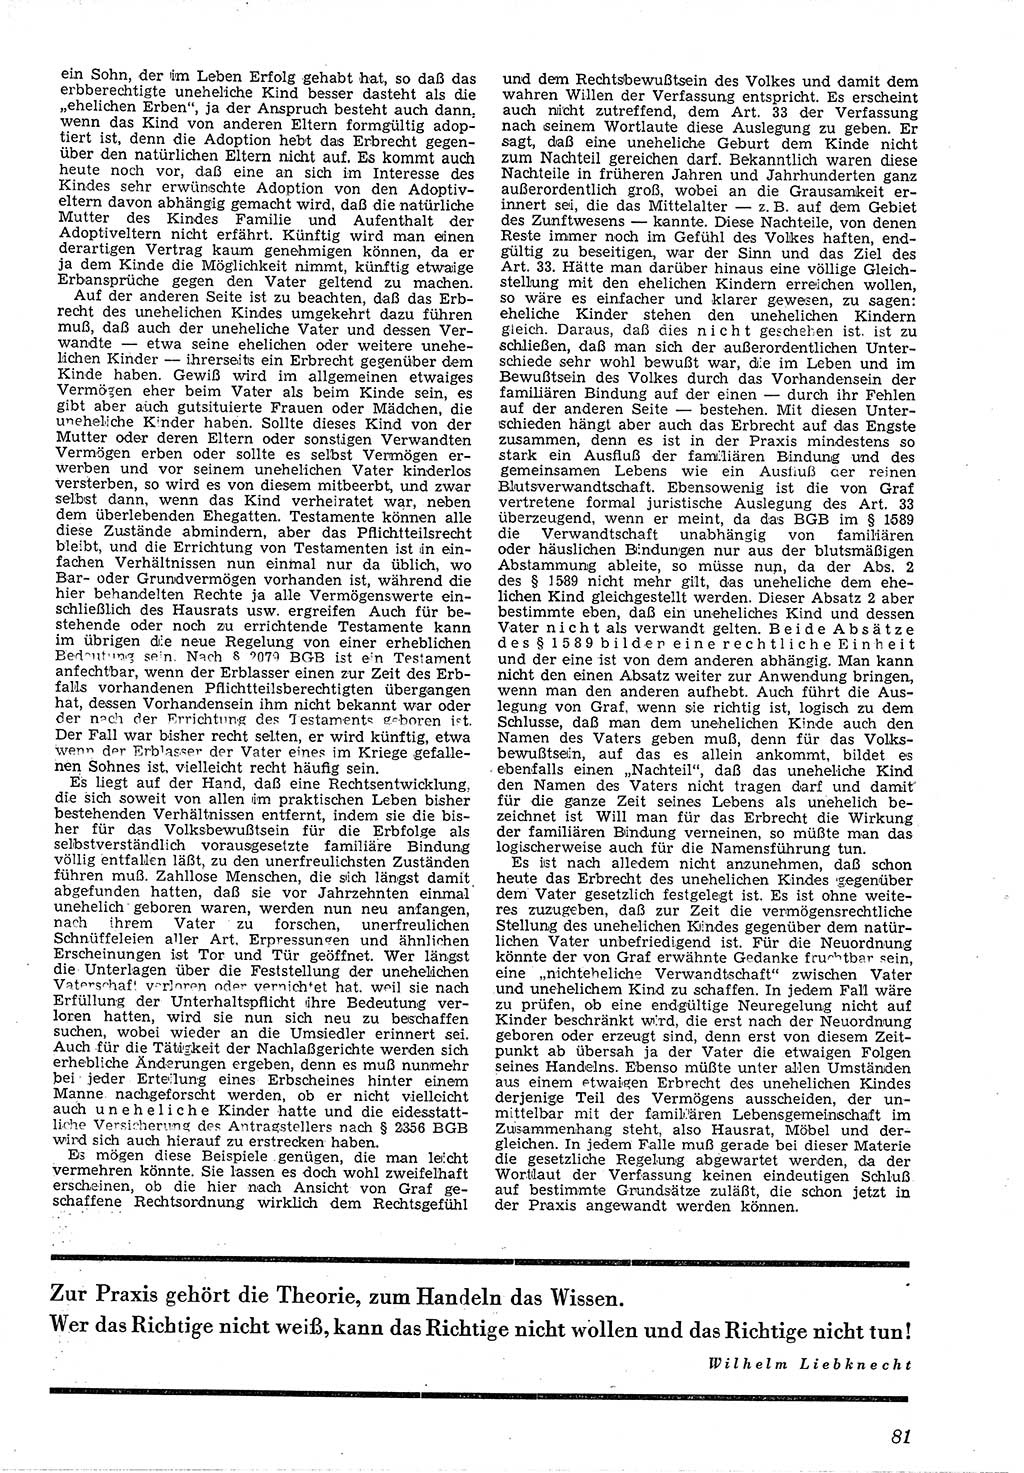 Neue Justiz (NJ), Zeitschrift für Recht und Rechtswissenschaft [Deutsche Demokratische Republik (DDR)], 4. Jahrgang 1950, Seite 81 (NJ DDR 1950, S. 81)